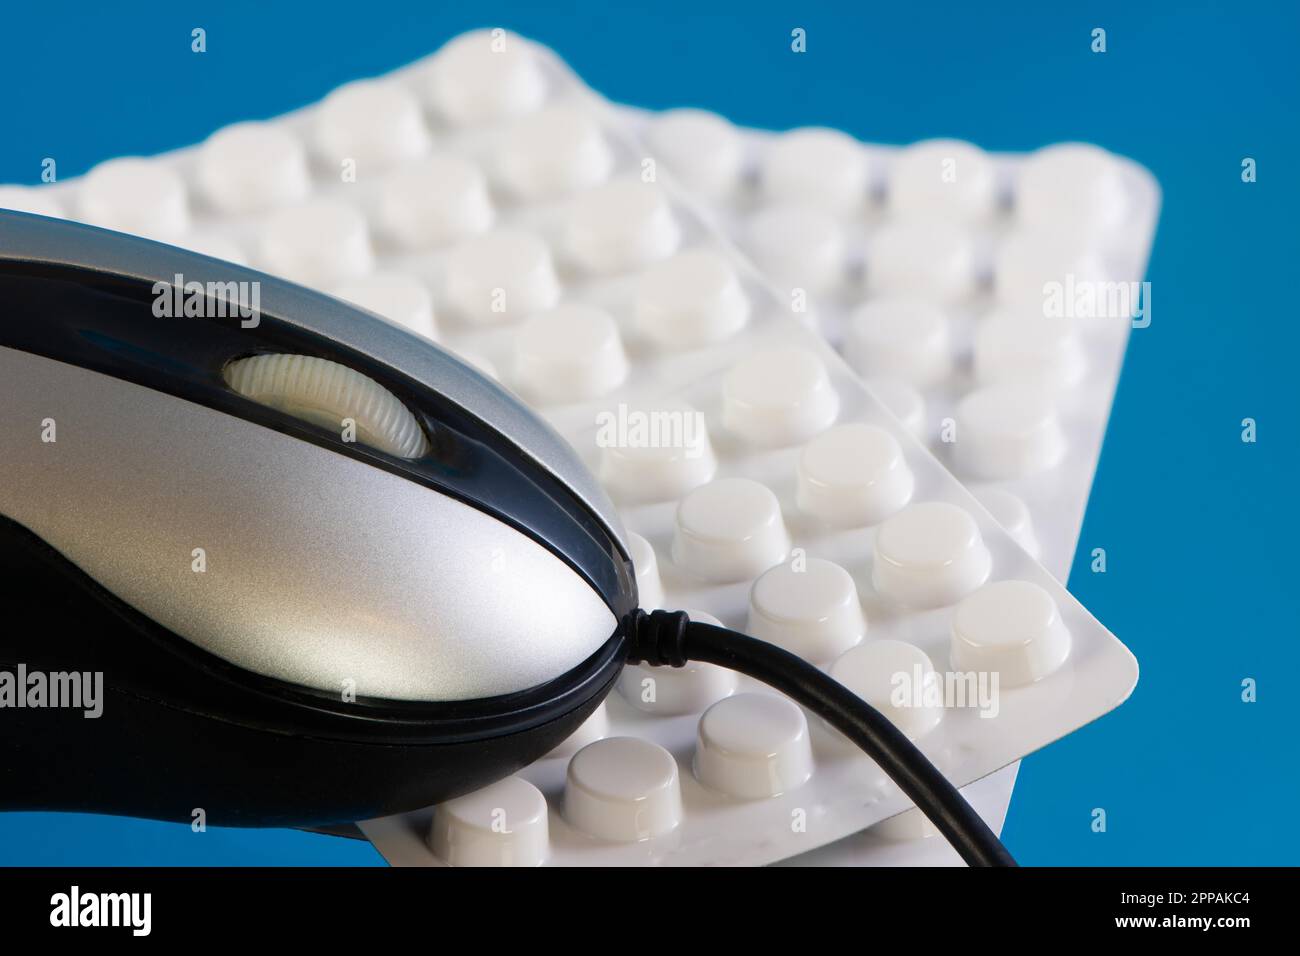 Mouse e pillole come simbolo per l'ordinazione online di medicina in una farmacia internet Foto Stock